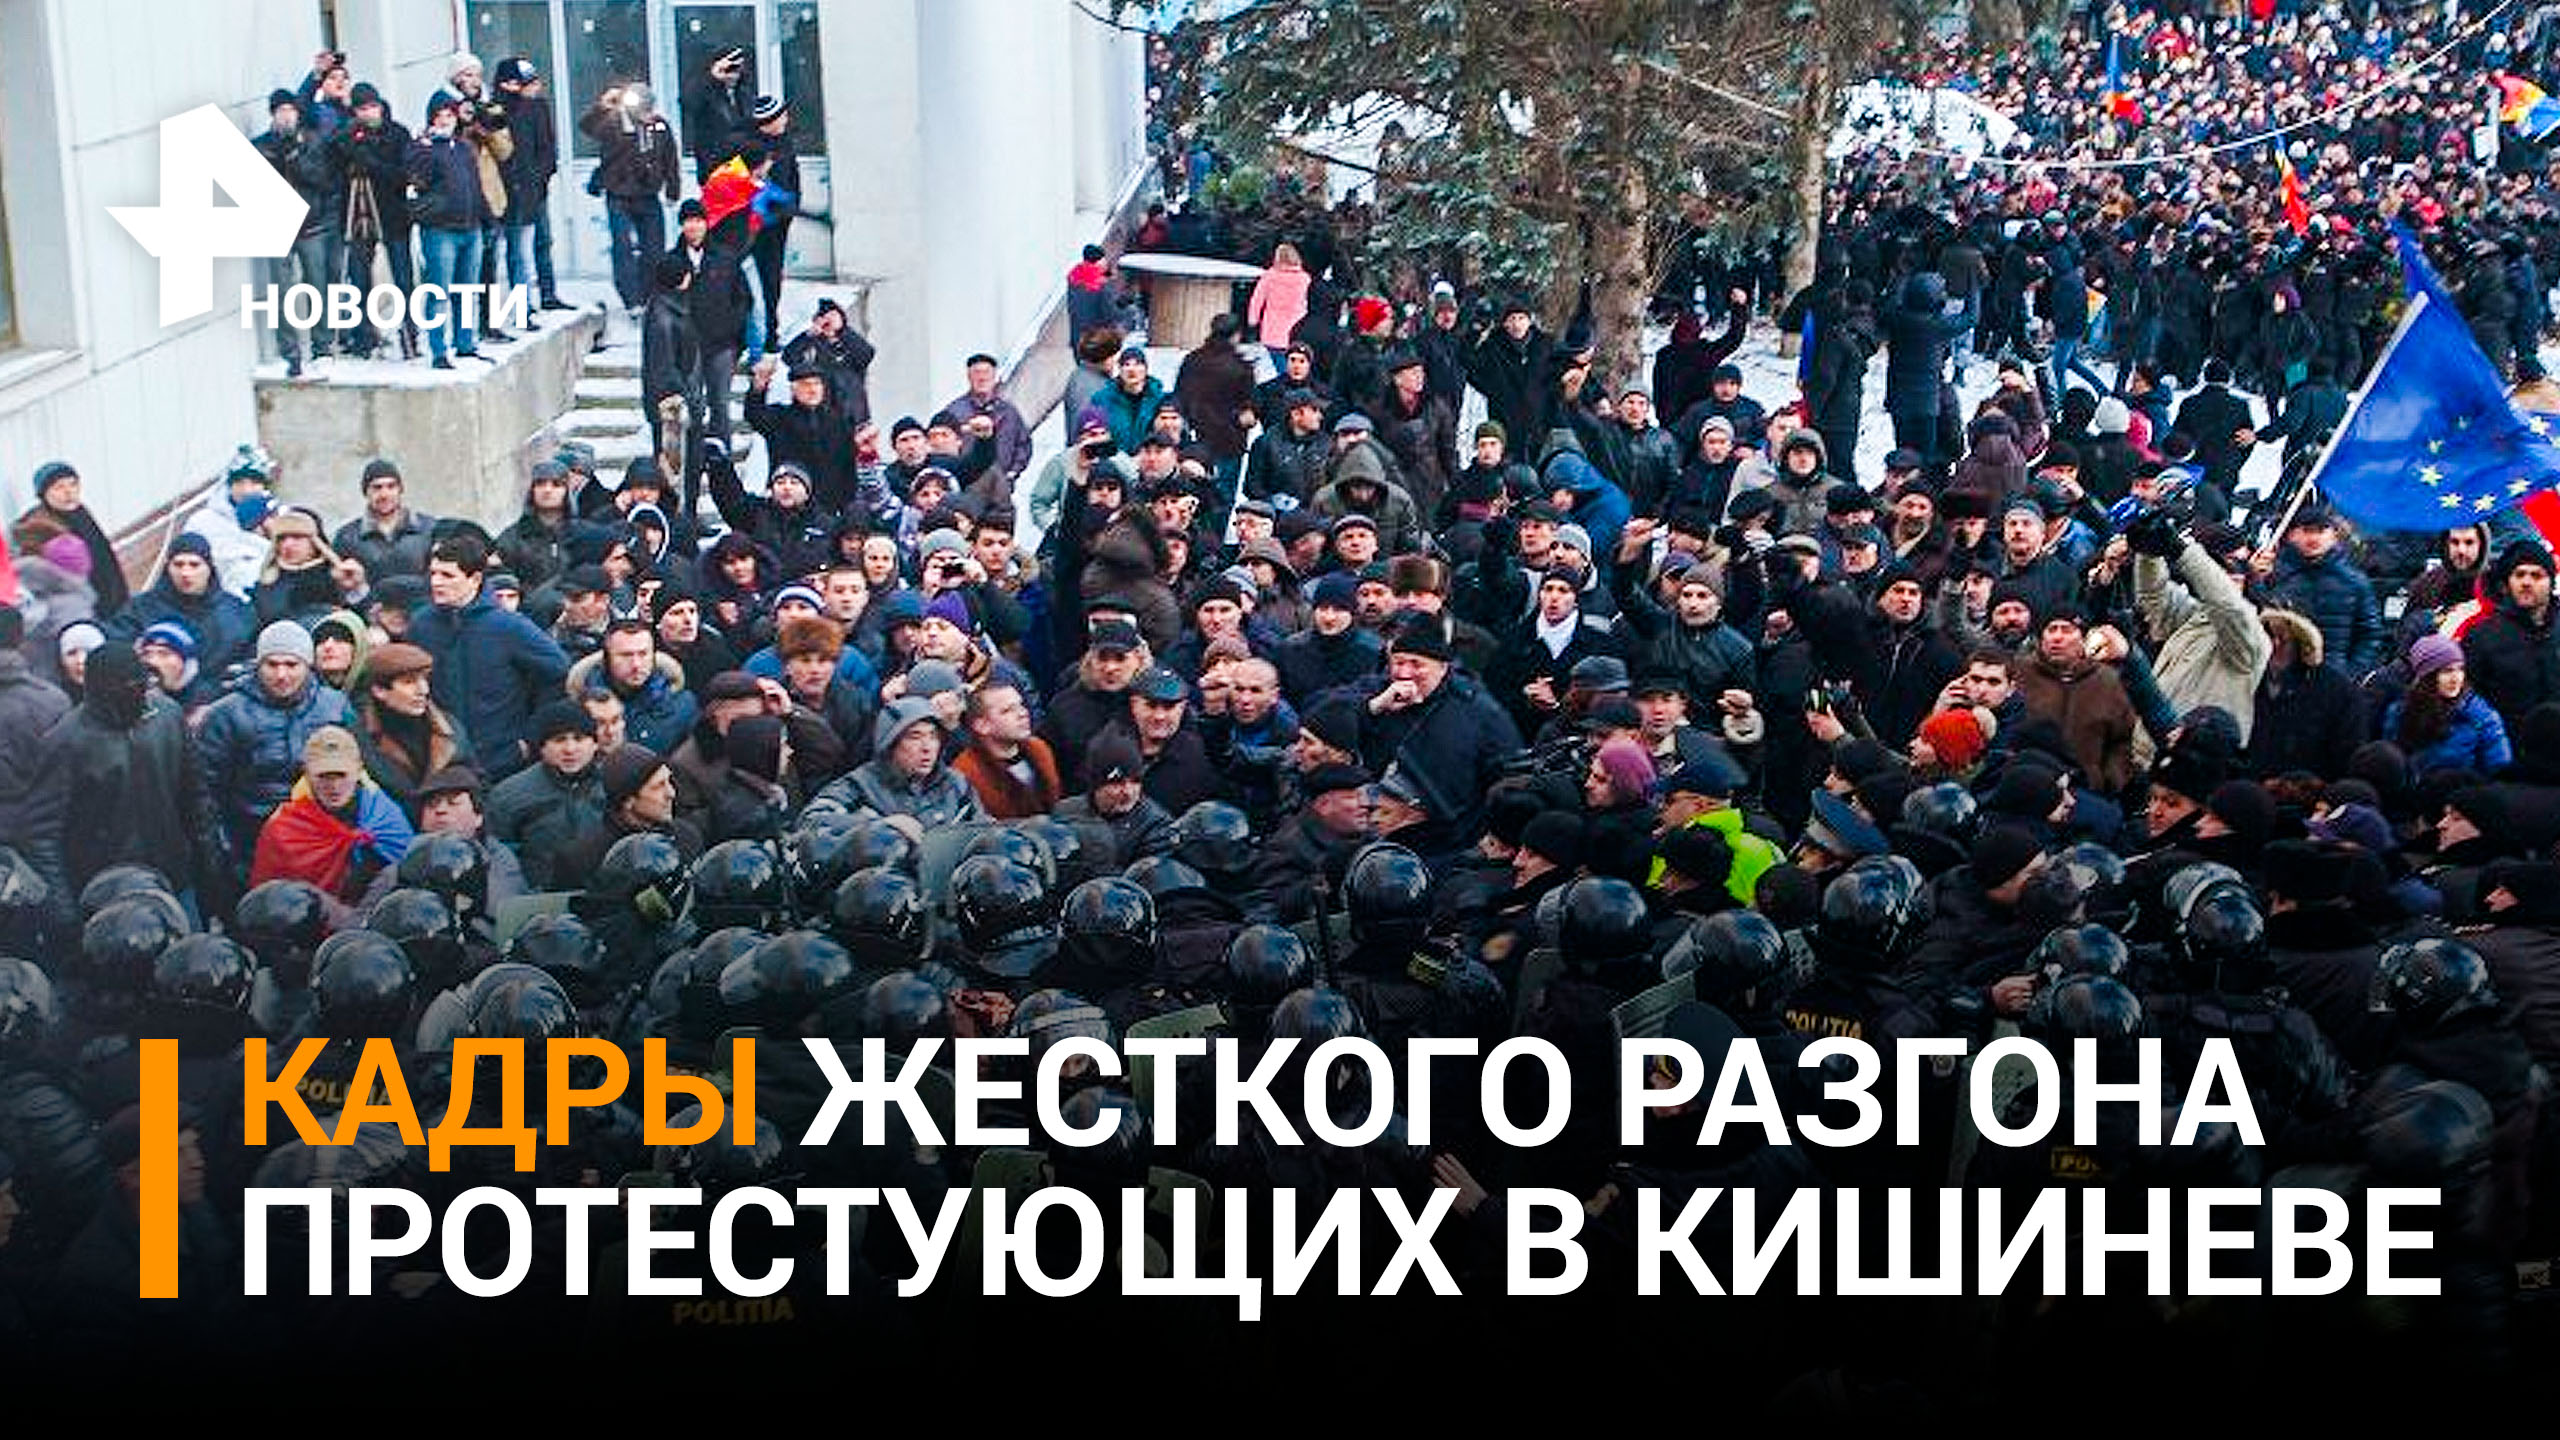 Почти 60 тысяч человек вышли на акцию протеста в Кишиневе / РЕН Новости